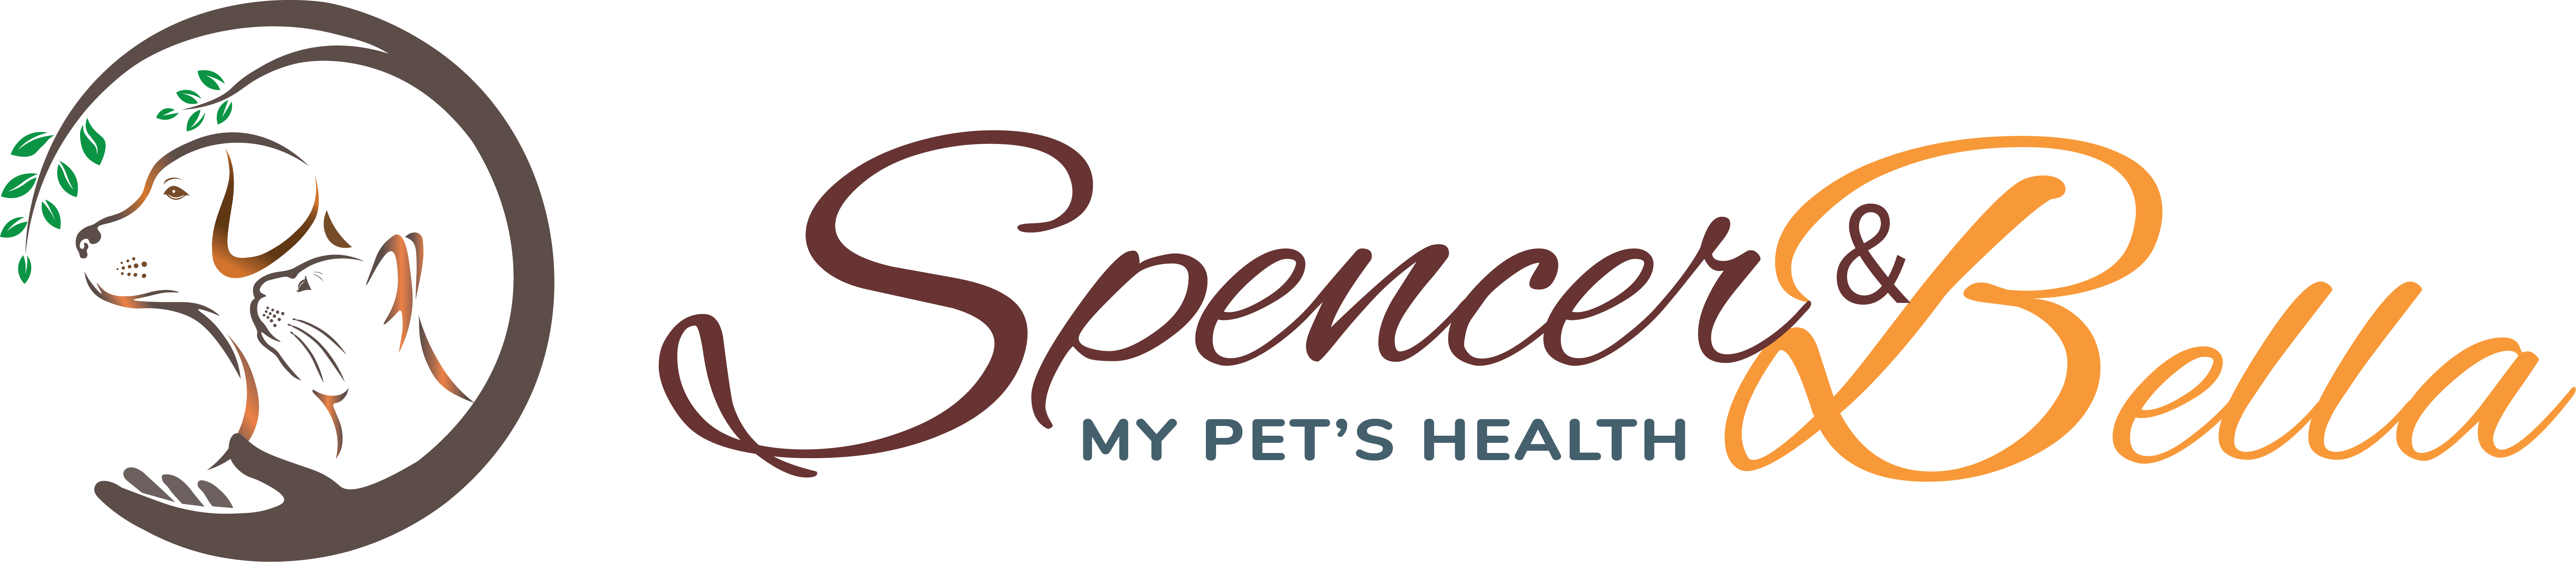 My Pet's Health (Spencer & Bella)